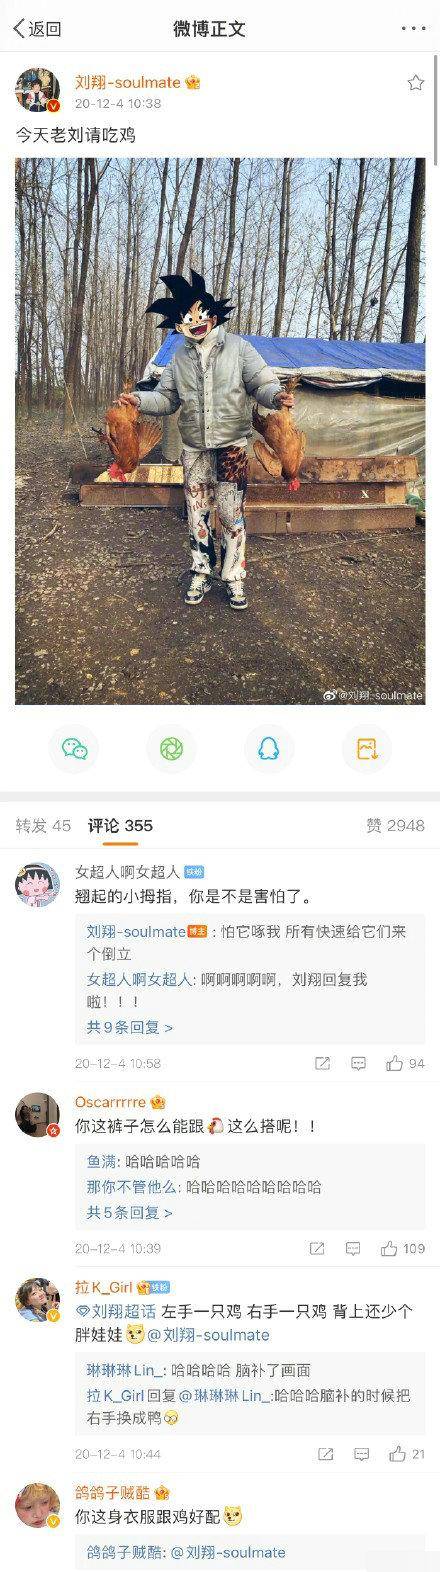 刘翔腾讯微博转载的微博引发热议，昔日飞人再次成为焦点